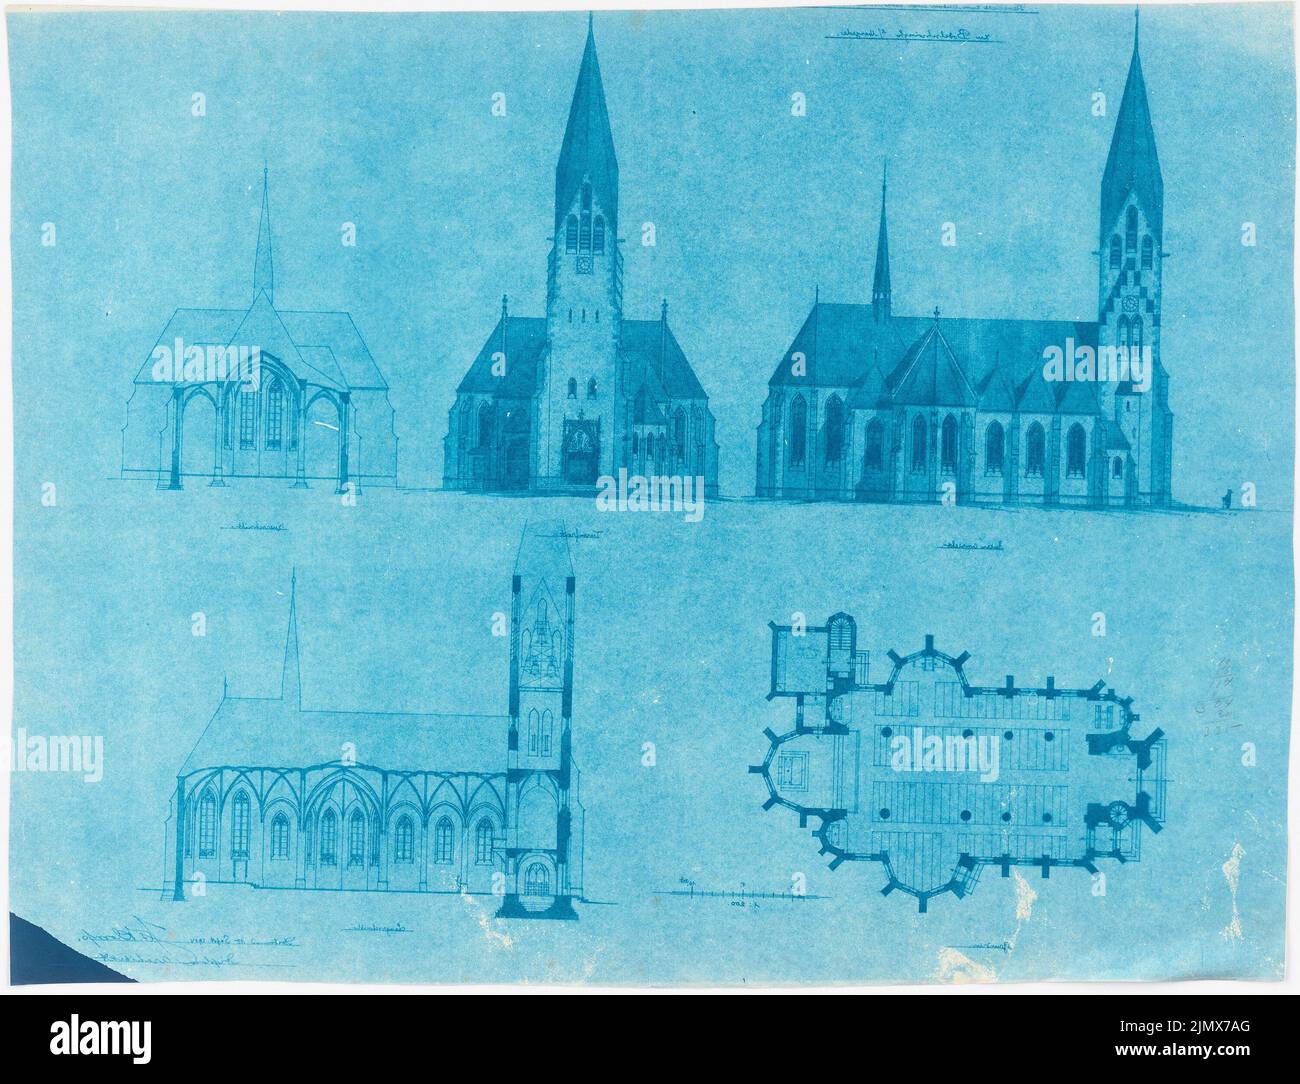 Klomp Johannes Franziskus (1865-1946), visite de Saint-Mariä, Dortmund-Bodelschwingh (15 septembre 1904): 2 vues, coupe transversale, section longitudinale, plan d'étage 1: 200. Photocalque sur papier (miroir), 48,5 x 63,3 cm (y compris les bords de balayage) Klomp Johannes Franziskus (1865-1946): St. Mariä Heimsuchung, Dortmund-Bodelschwingh Banque D'Images